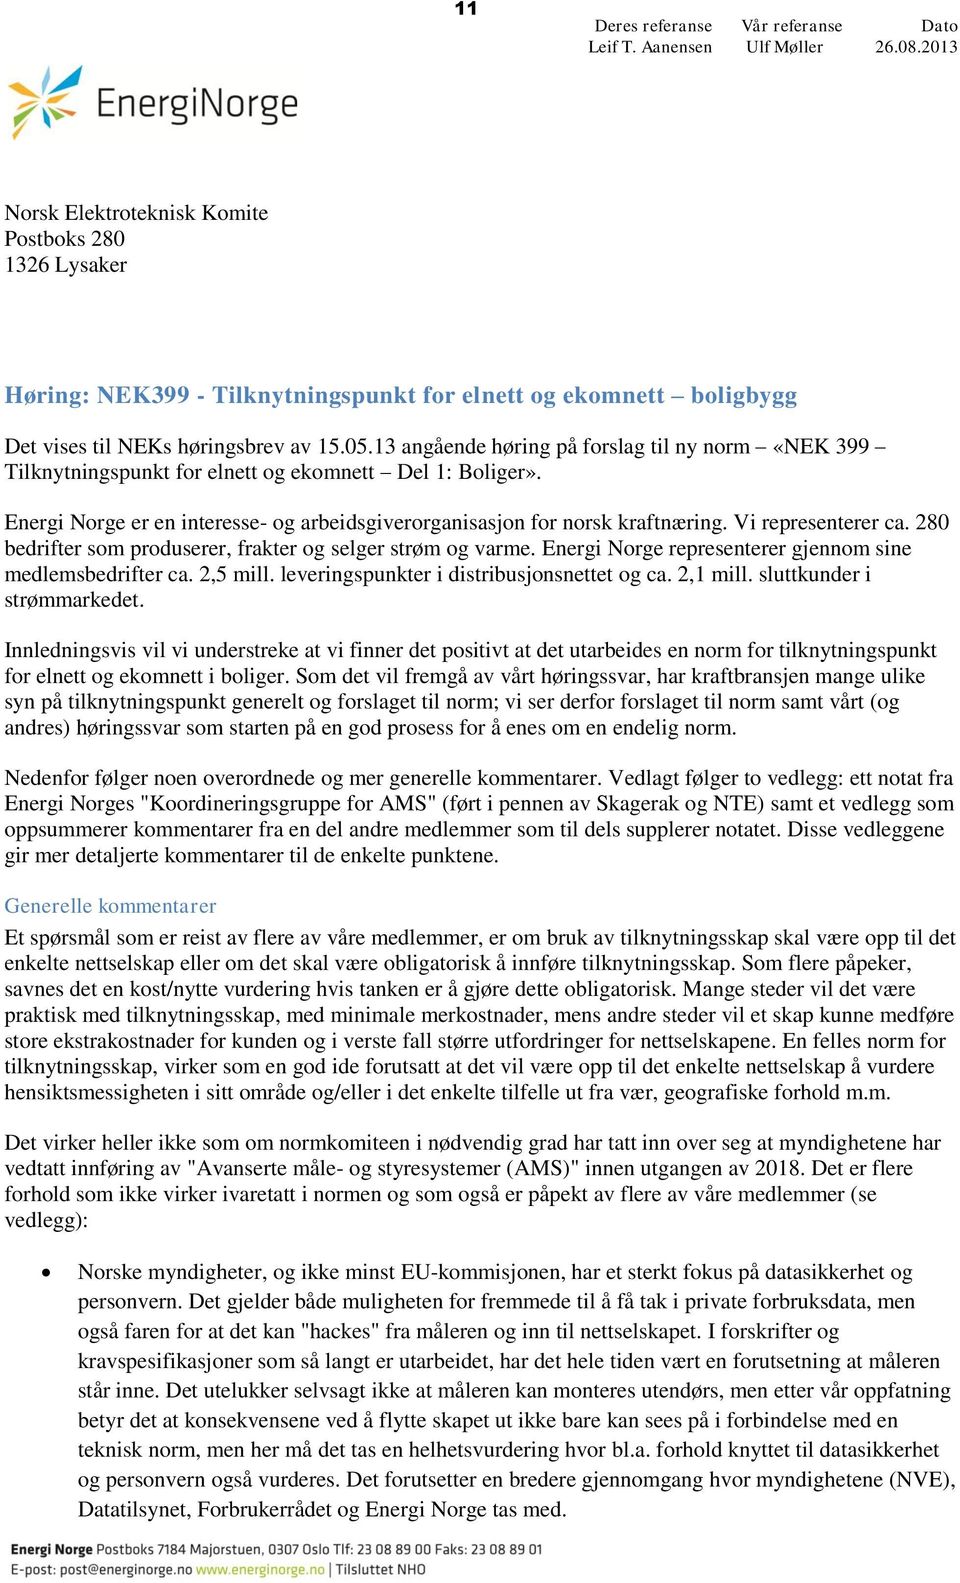 13 angående høring på forslag til ny norm «NEK 399 Tilknytningspunkt for elnett og ekomnett Del 1: Boliger». Energi Norge er en interesse- og arbeidsgiverorganisasjon for norsk kraftnæring.